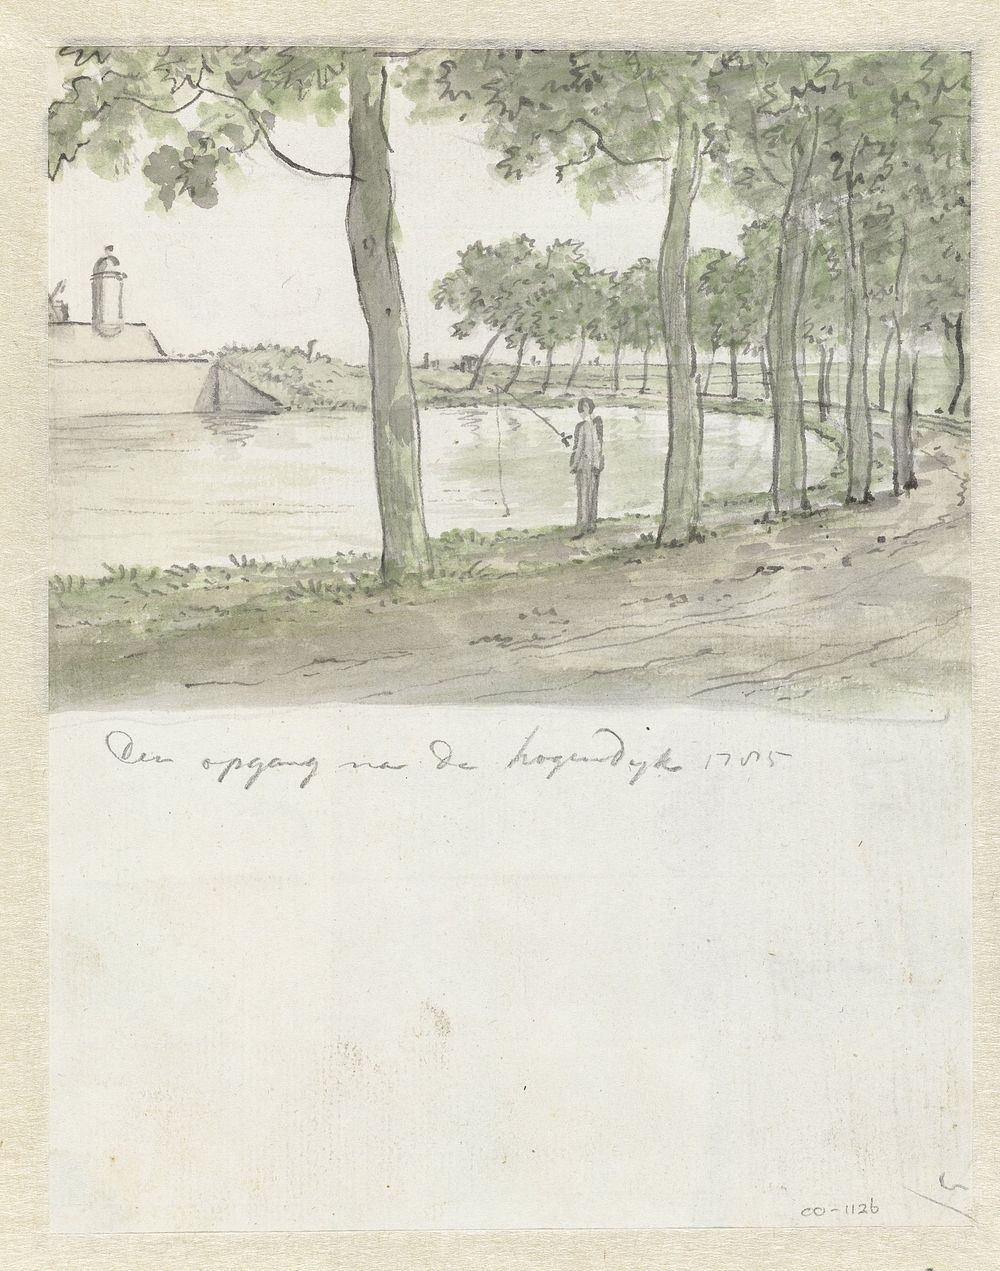 De opgang naar de Hogendijk (1785) by Jurriaan Andriessen